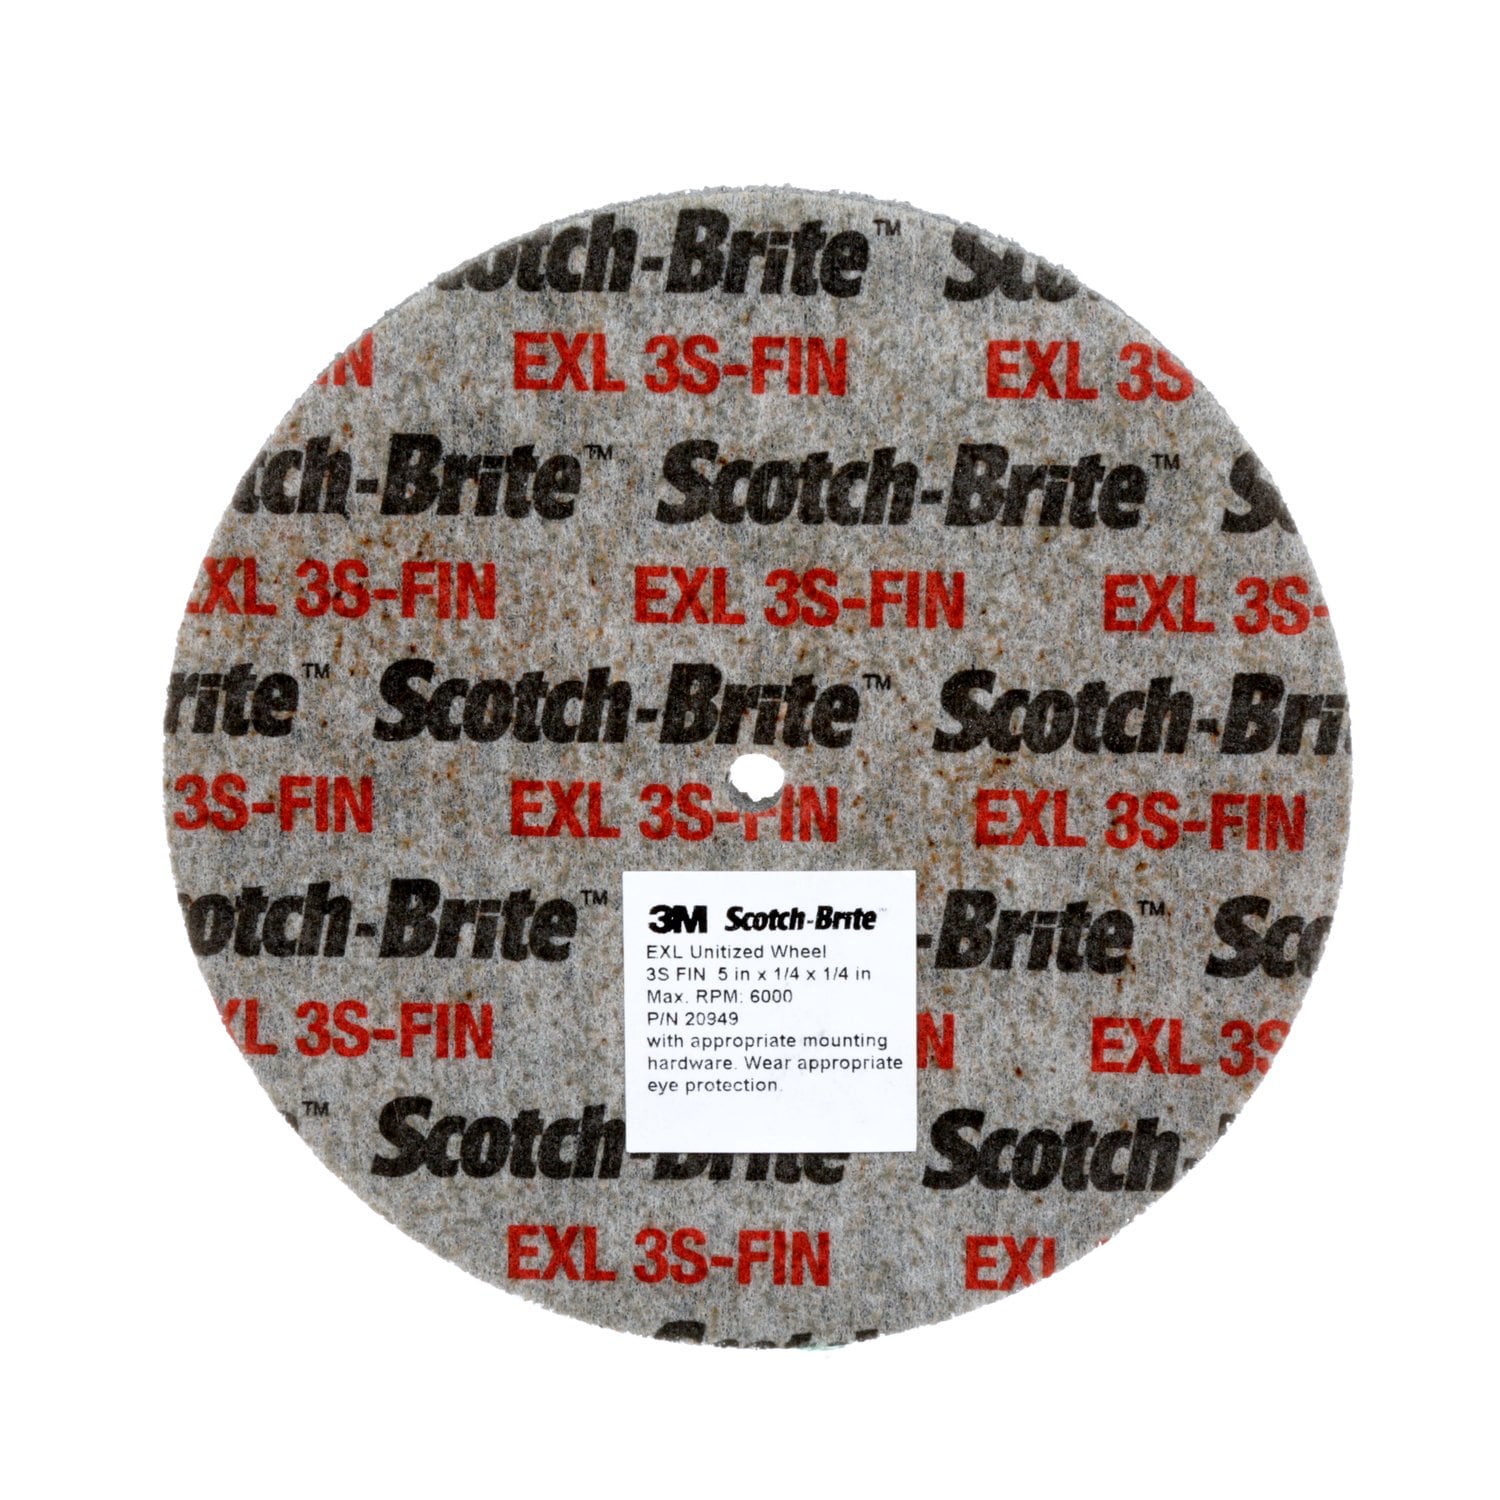 7100051641 - Scotch-Brite SST Unitized Wheel, ST-UW, 5S Fine, 1 in, Config